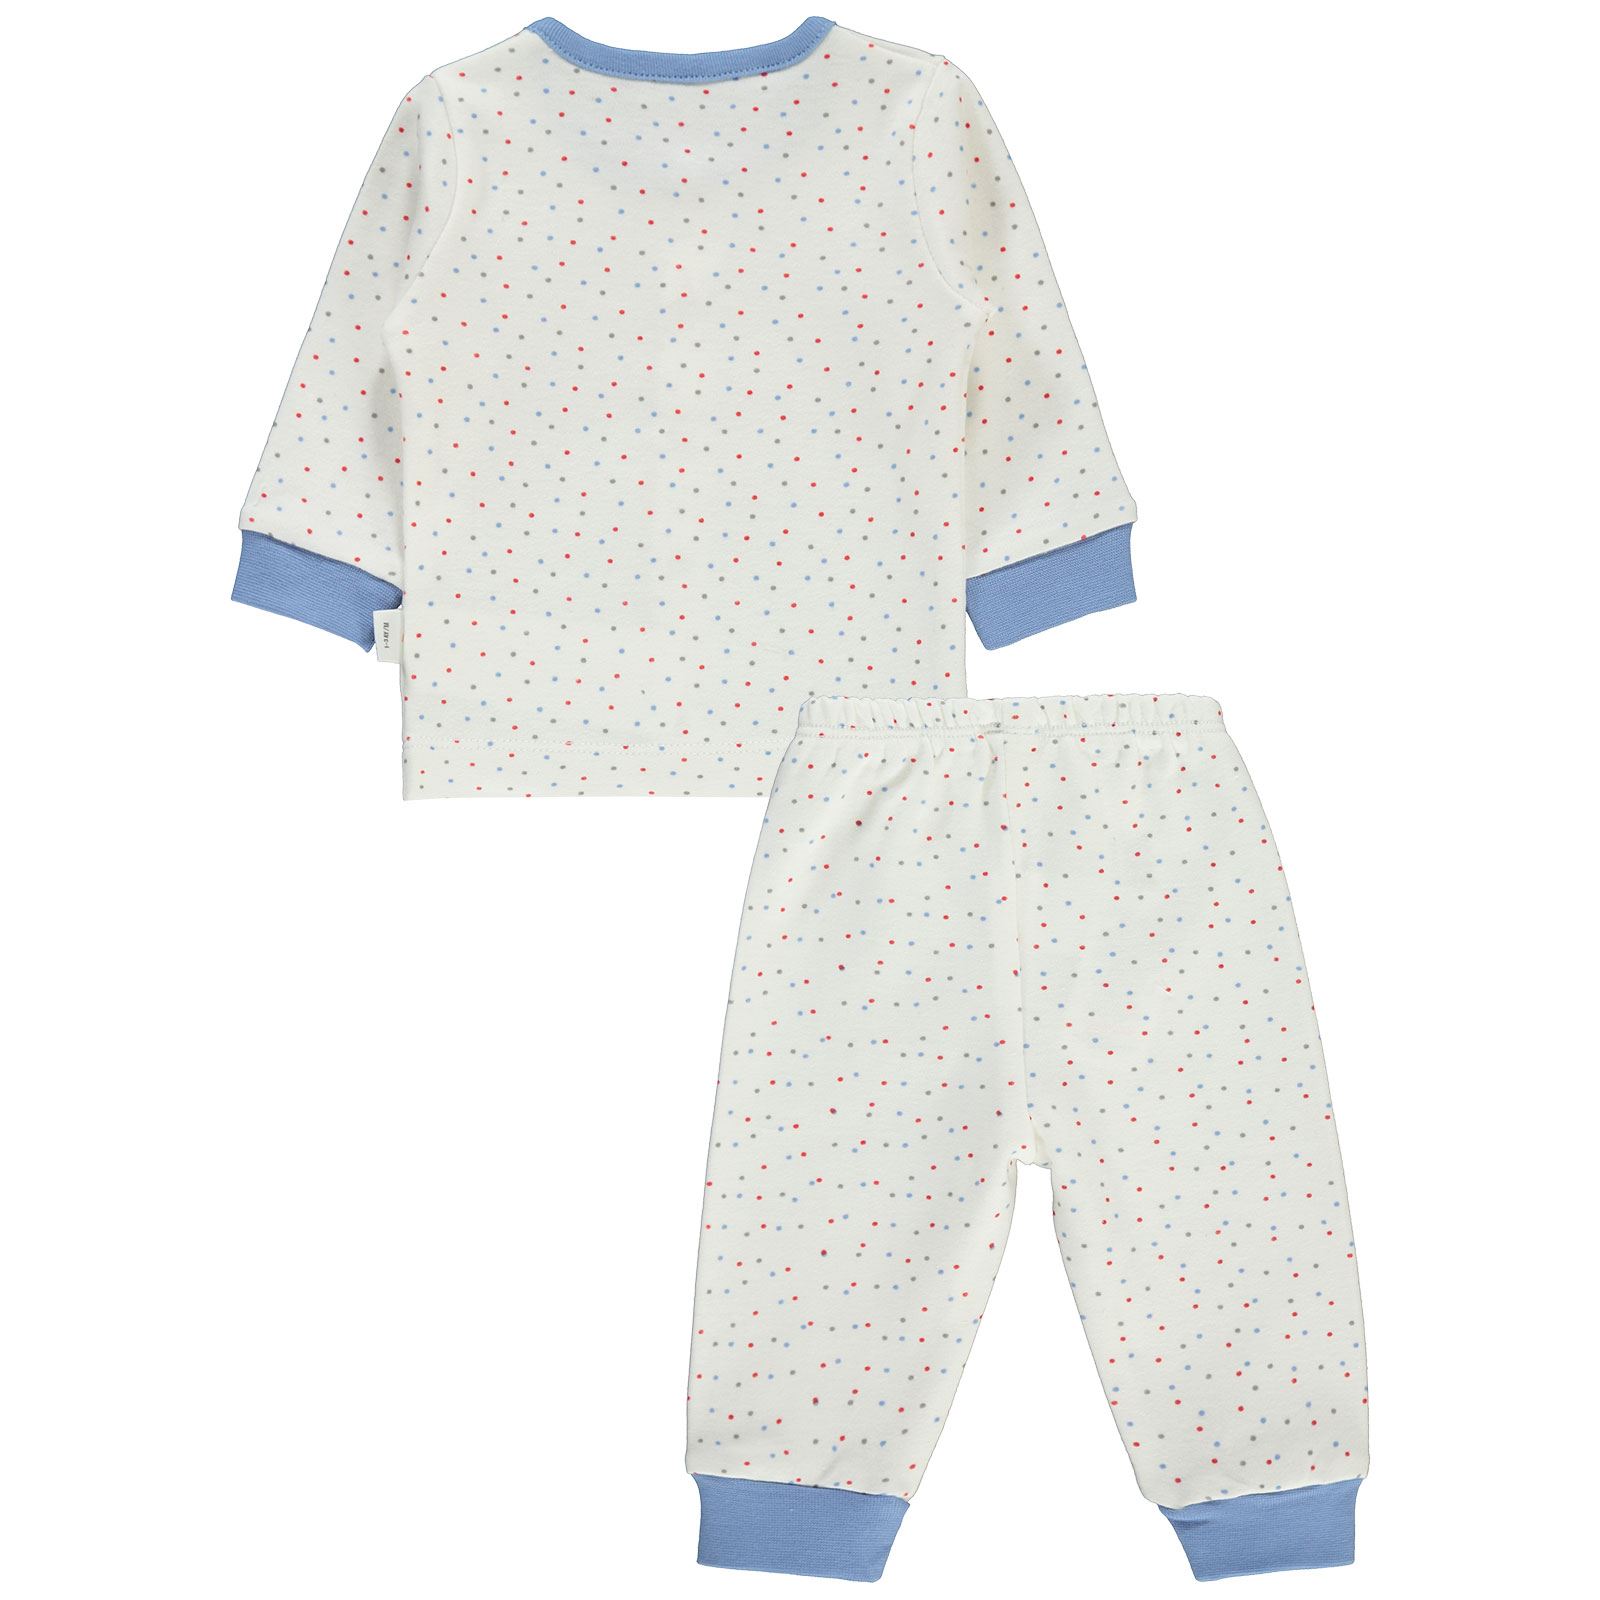 Civil Baby Bebek Pijama Takımı 1-3 Ay Mavi